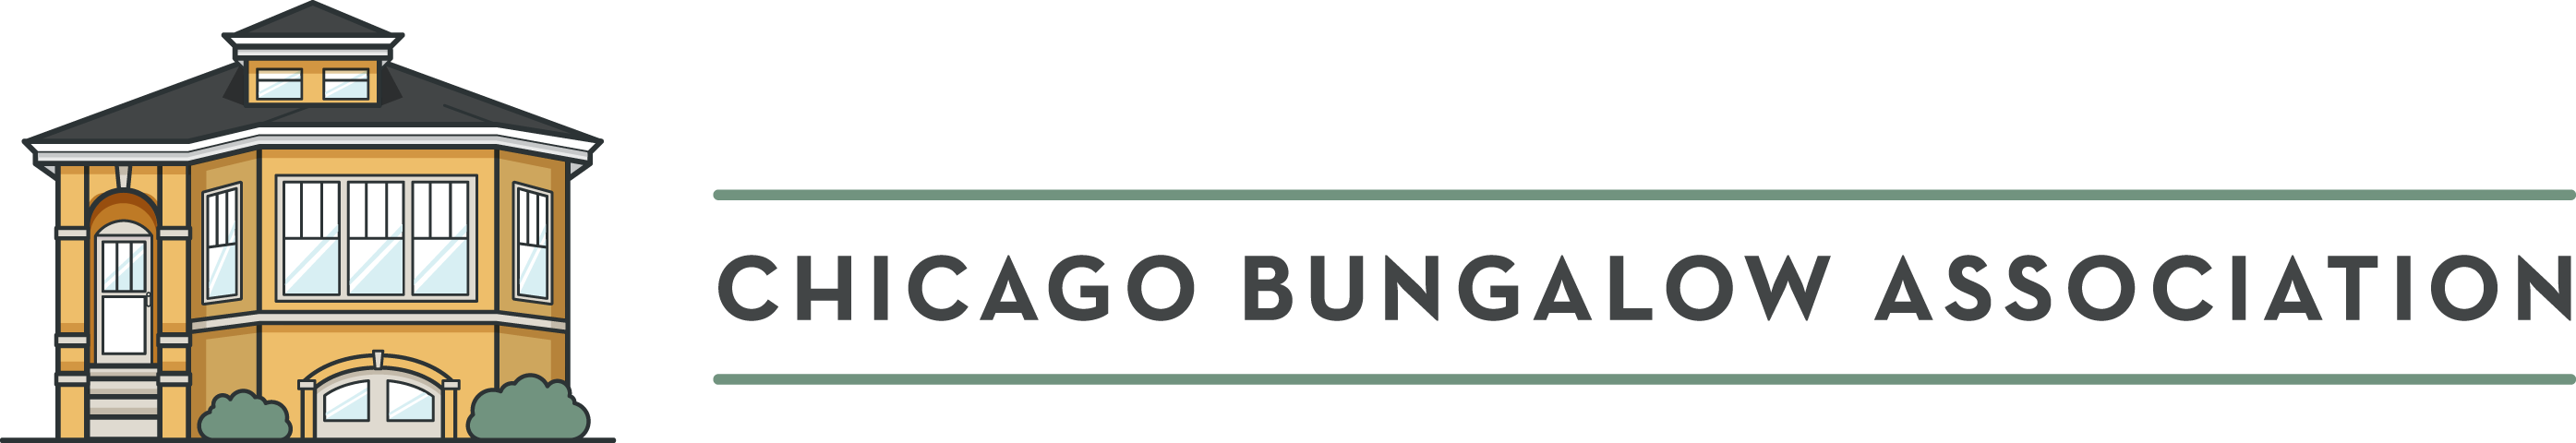 Chicago Bungalow Association